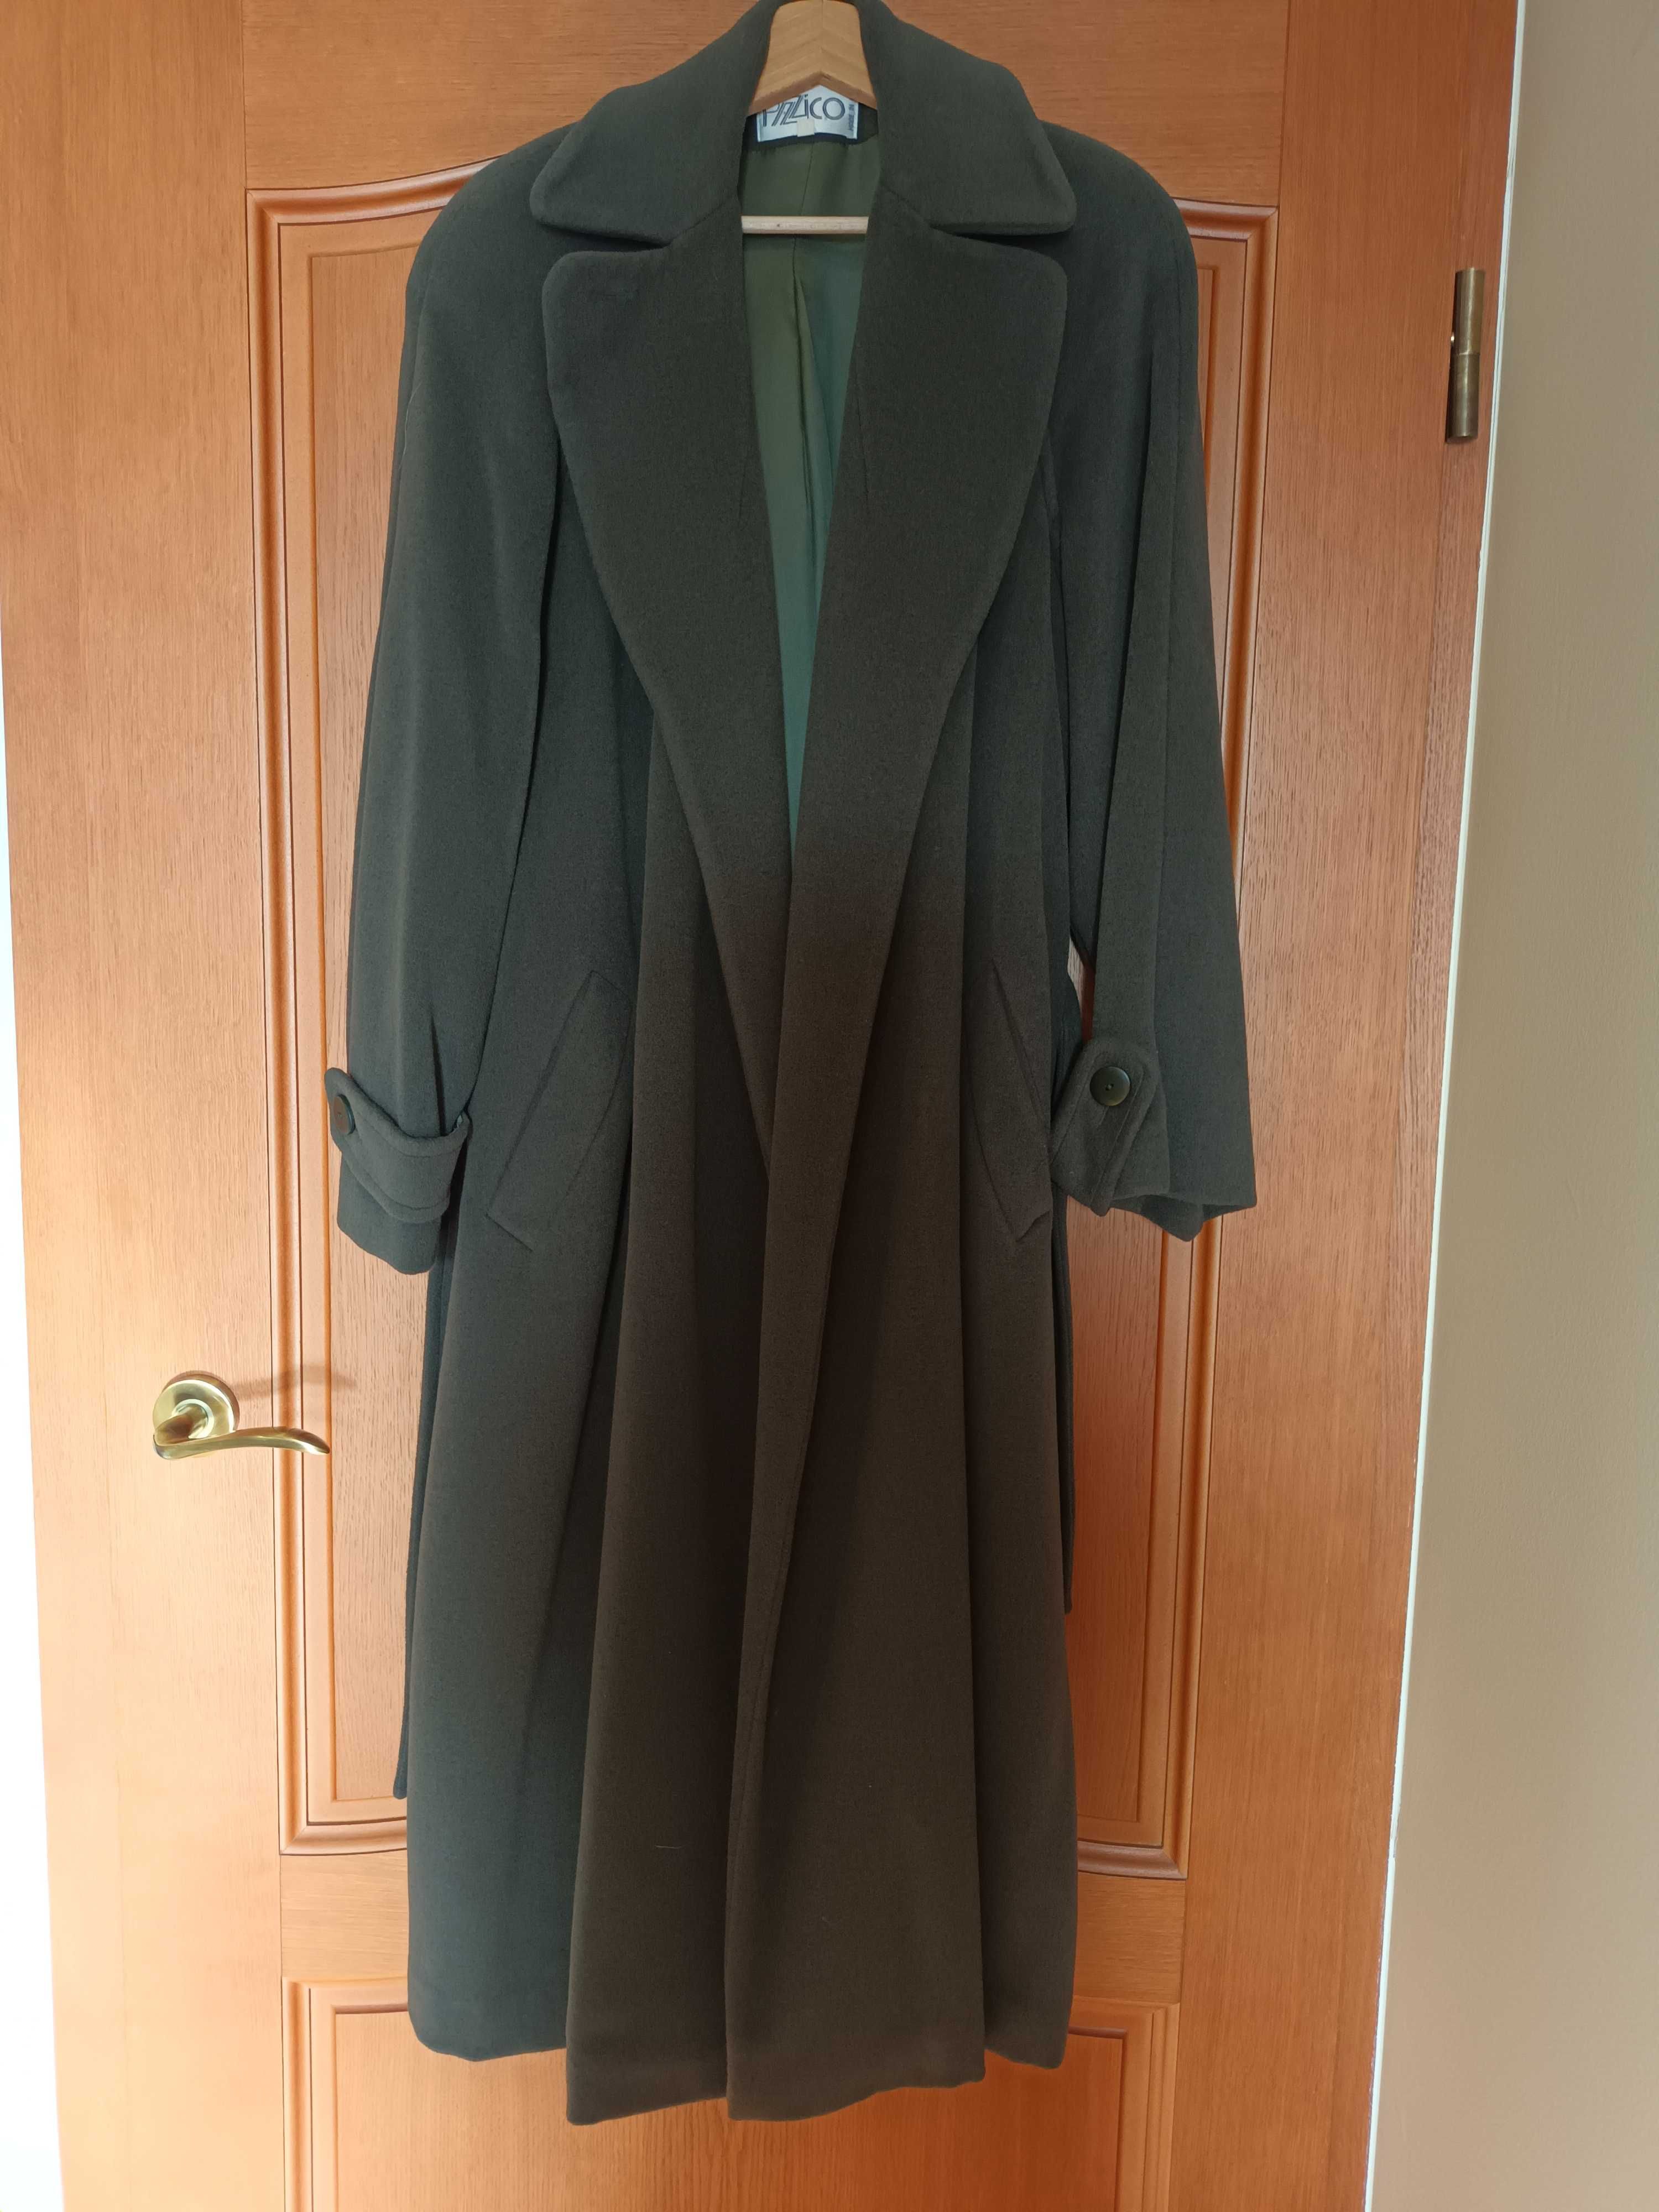 Damski wełniany płaszcz zimowy ciemna zieleń rozmiar 40